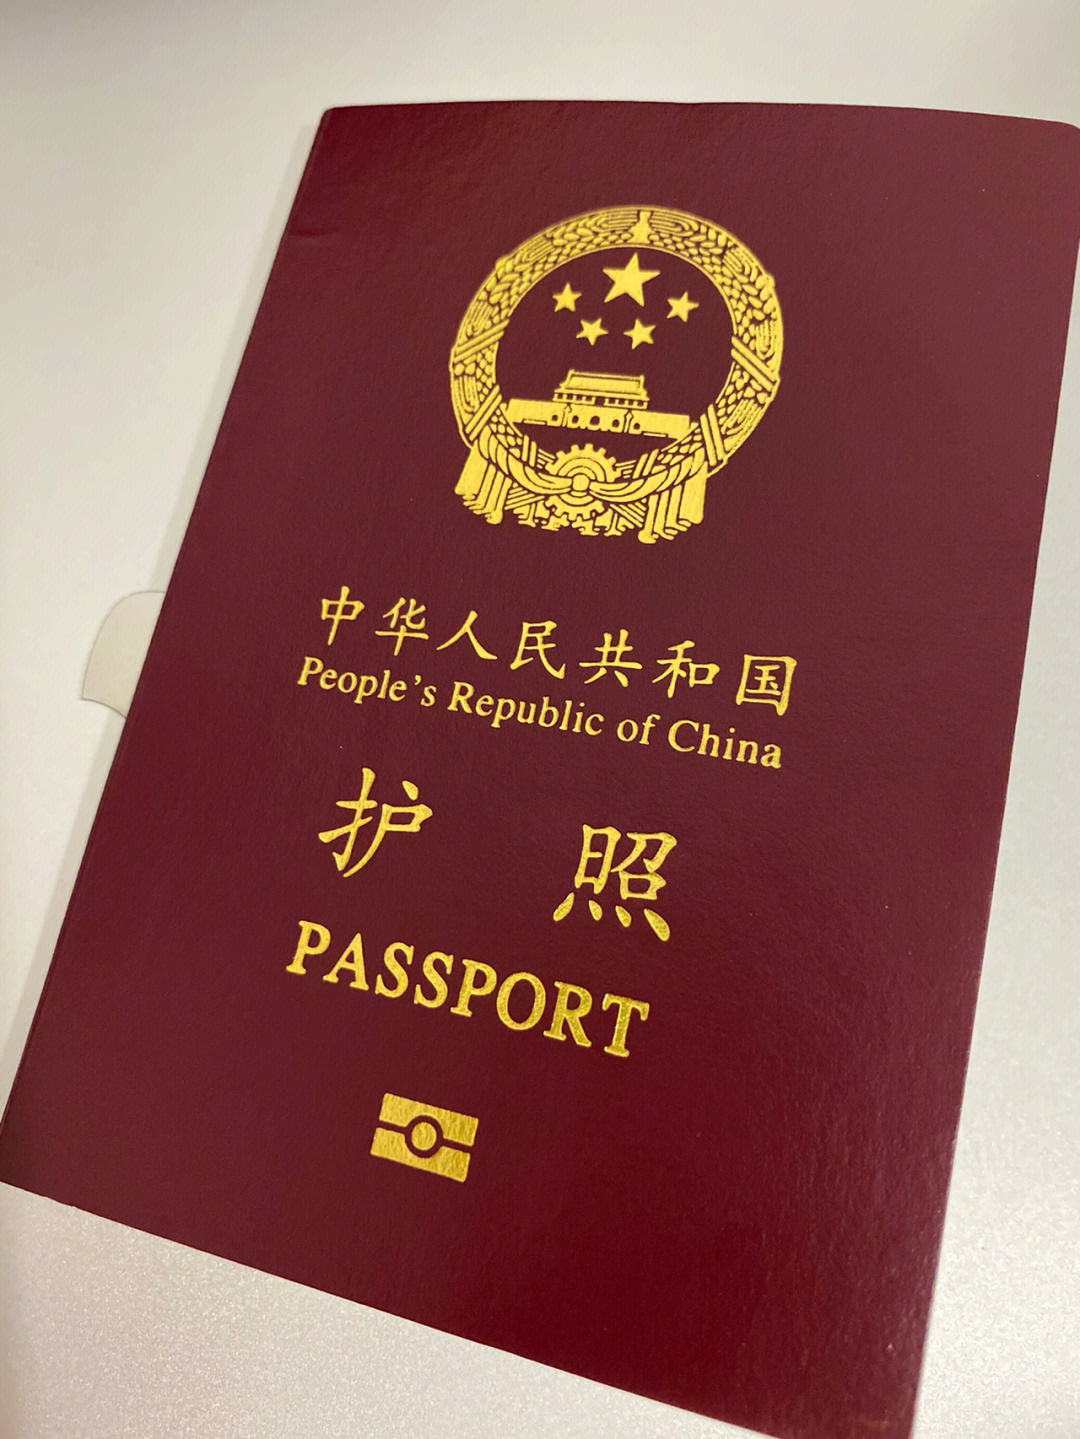 中国护照照片像素图片